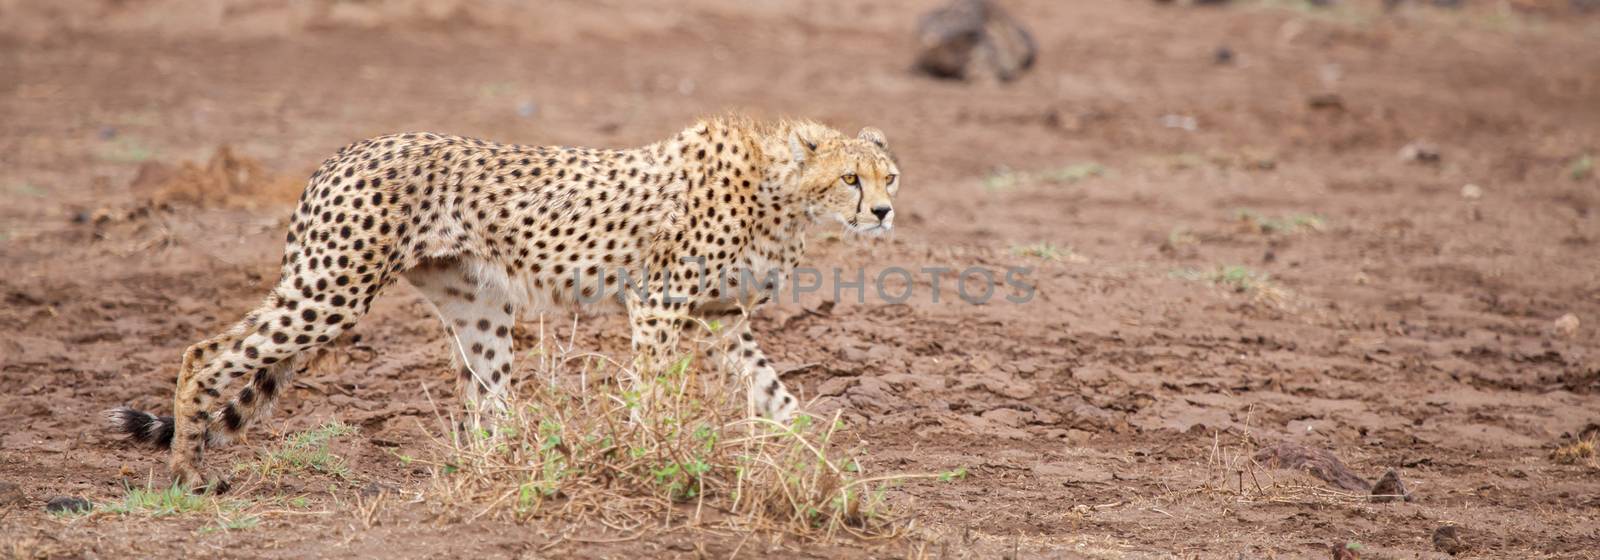 a gepard is walking in the savannah by 25ehaag6